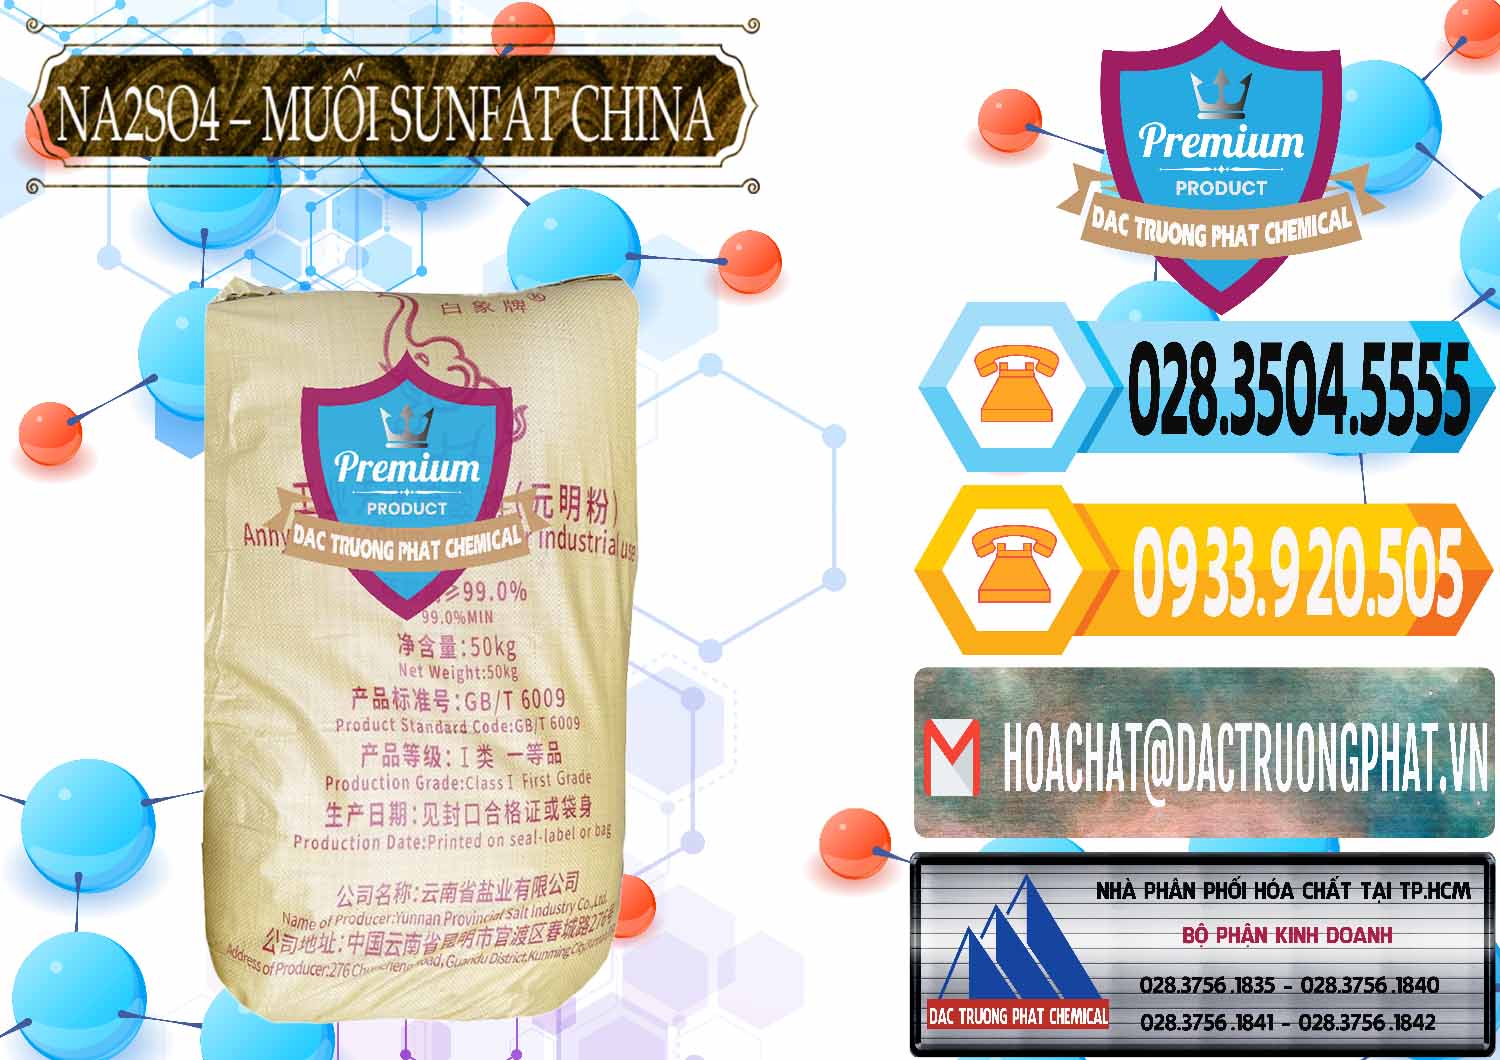 Kinh doanh ( bán ) Sodium Sulphate - Muối Sunfat Na2SO4 Logo Con Voi Trung Quốc China - 0409 - Công ty phân phối - cung cấp hóa chất tại TP.HCM - hoachattayrua.net